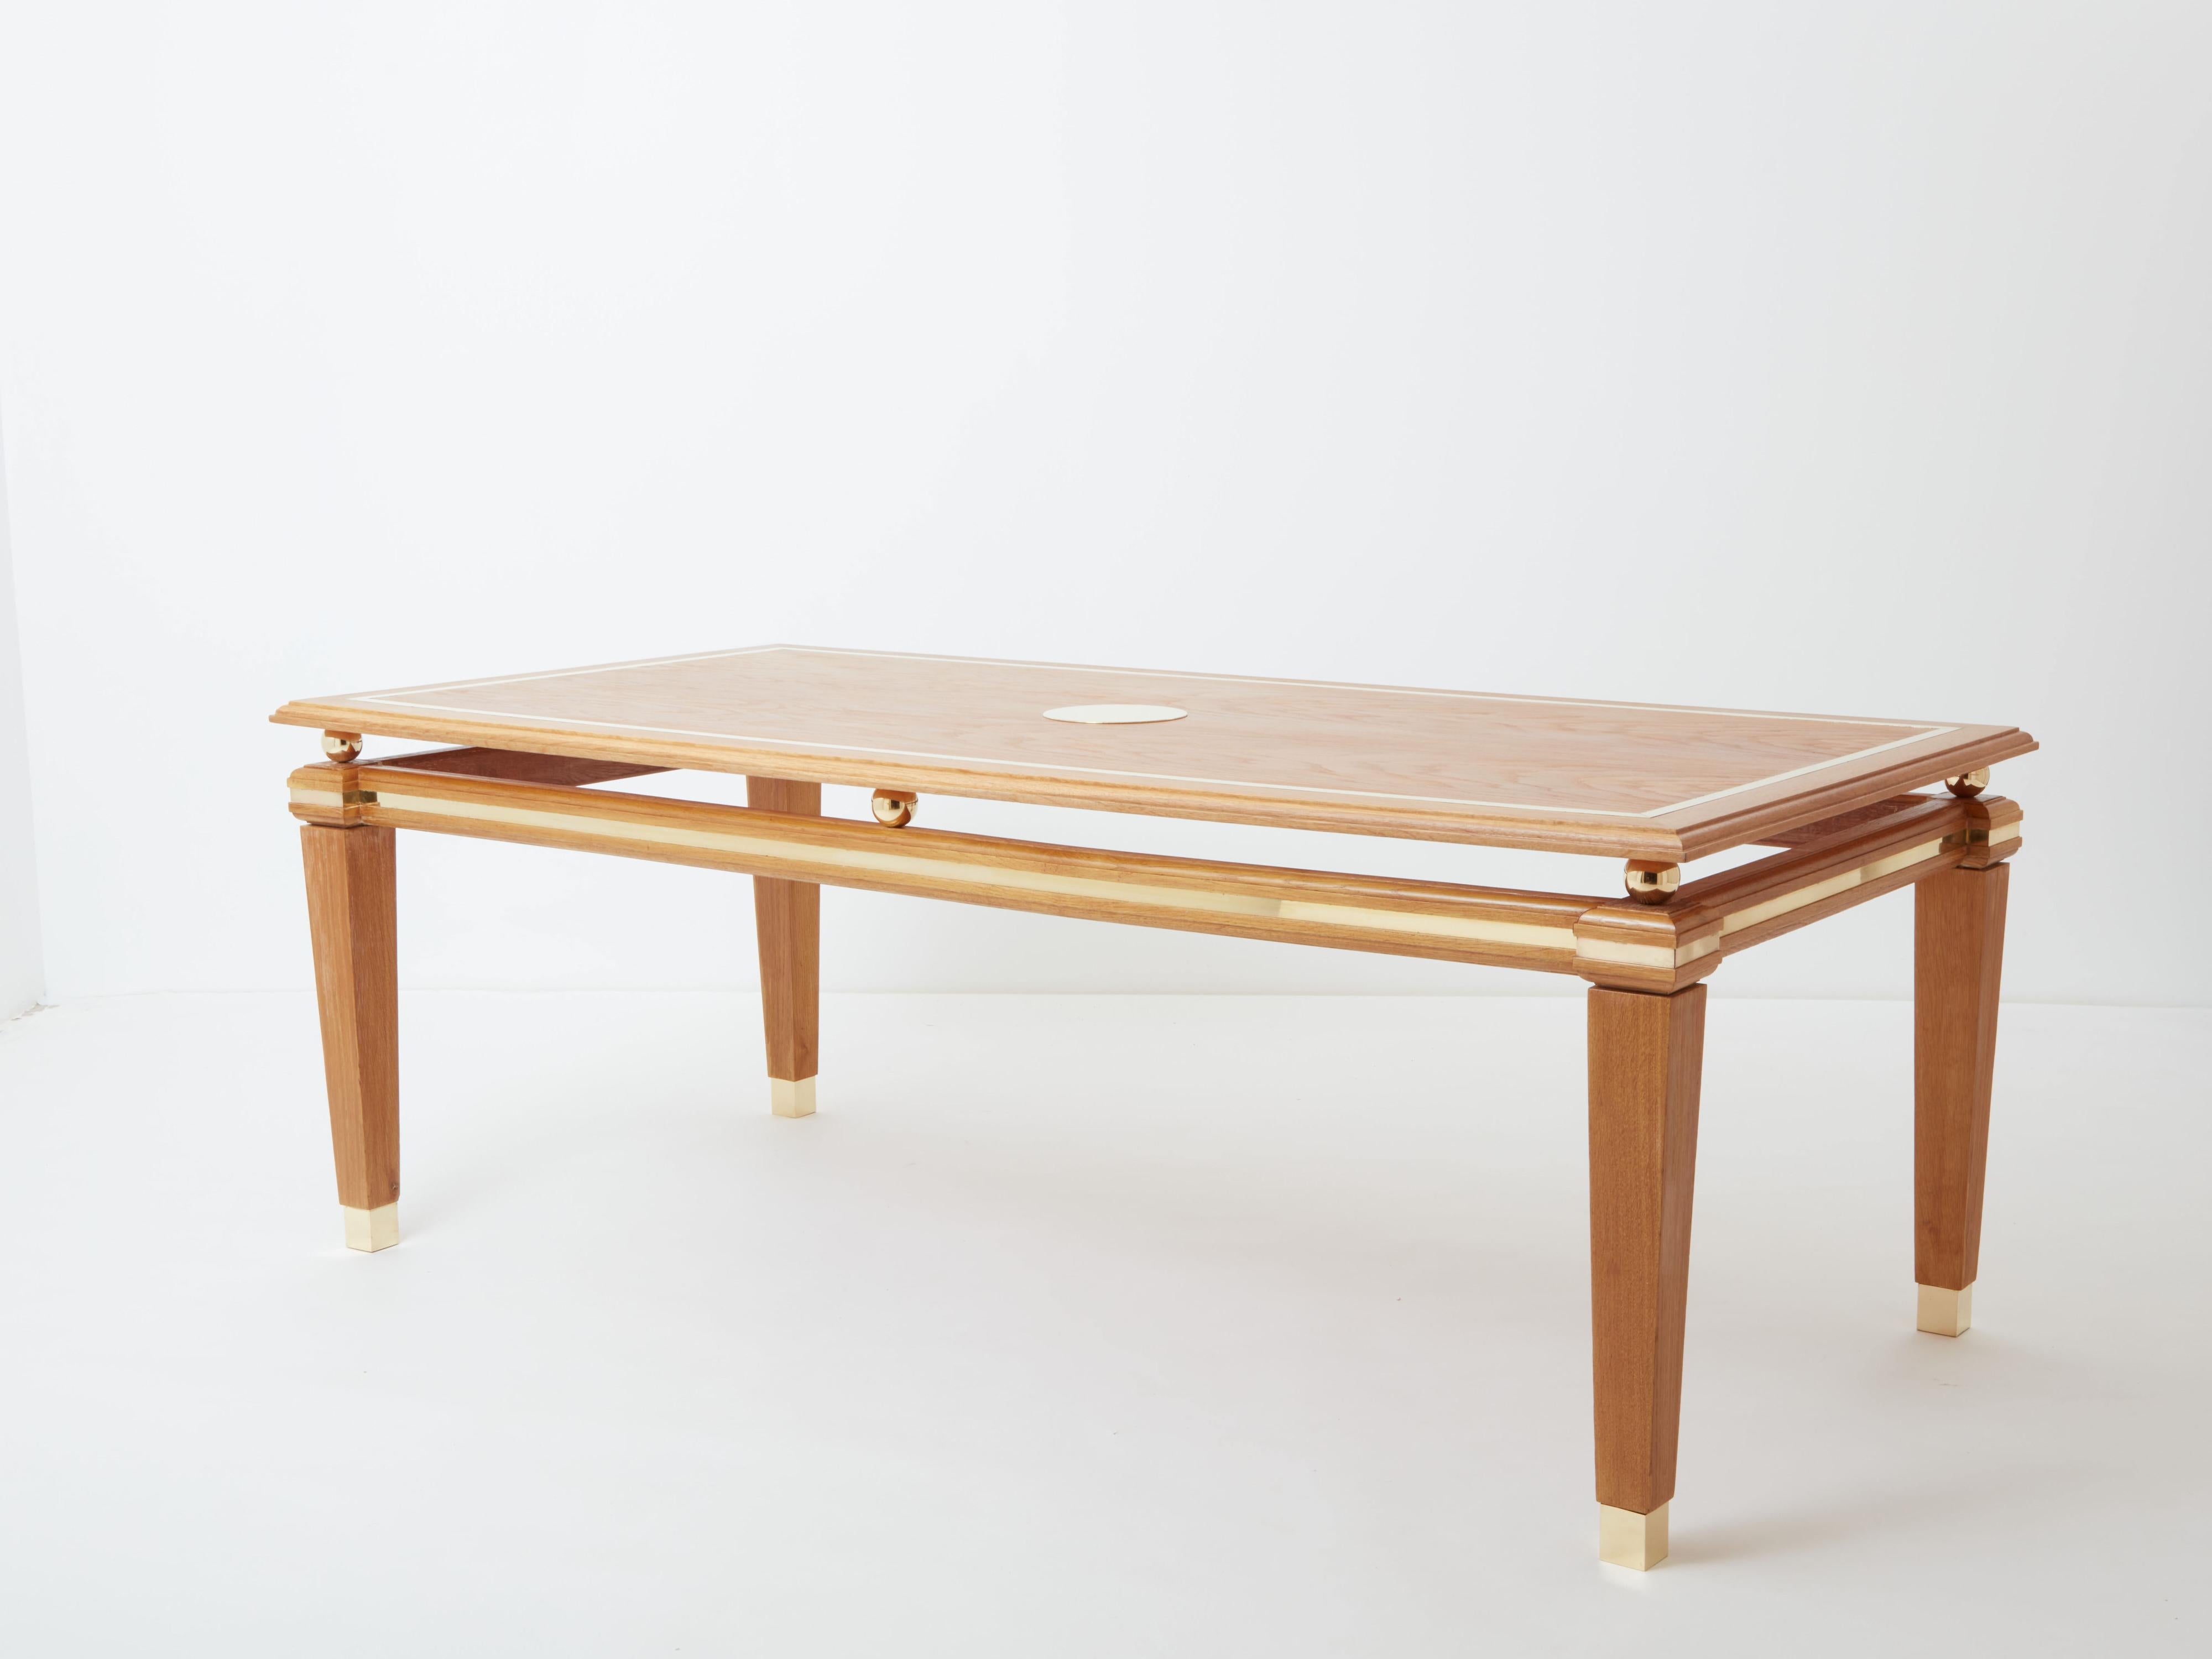 Dieser schöne Esstisch aus gebranntem Eichenholz wurde in den 1970er Jahren vom italienischen Designer Tommaso Barbi aus der Mitte des Jahrhunderts entworfen. Die Platte ist mit einer schönen Messingeinlage versehen und hat ein rundes, erhabenes